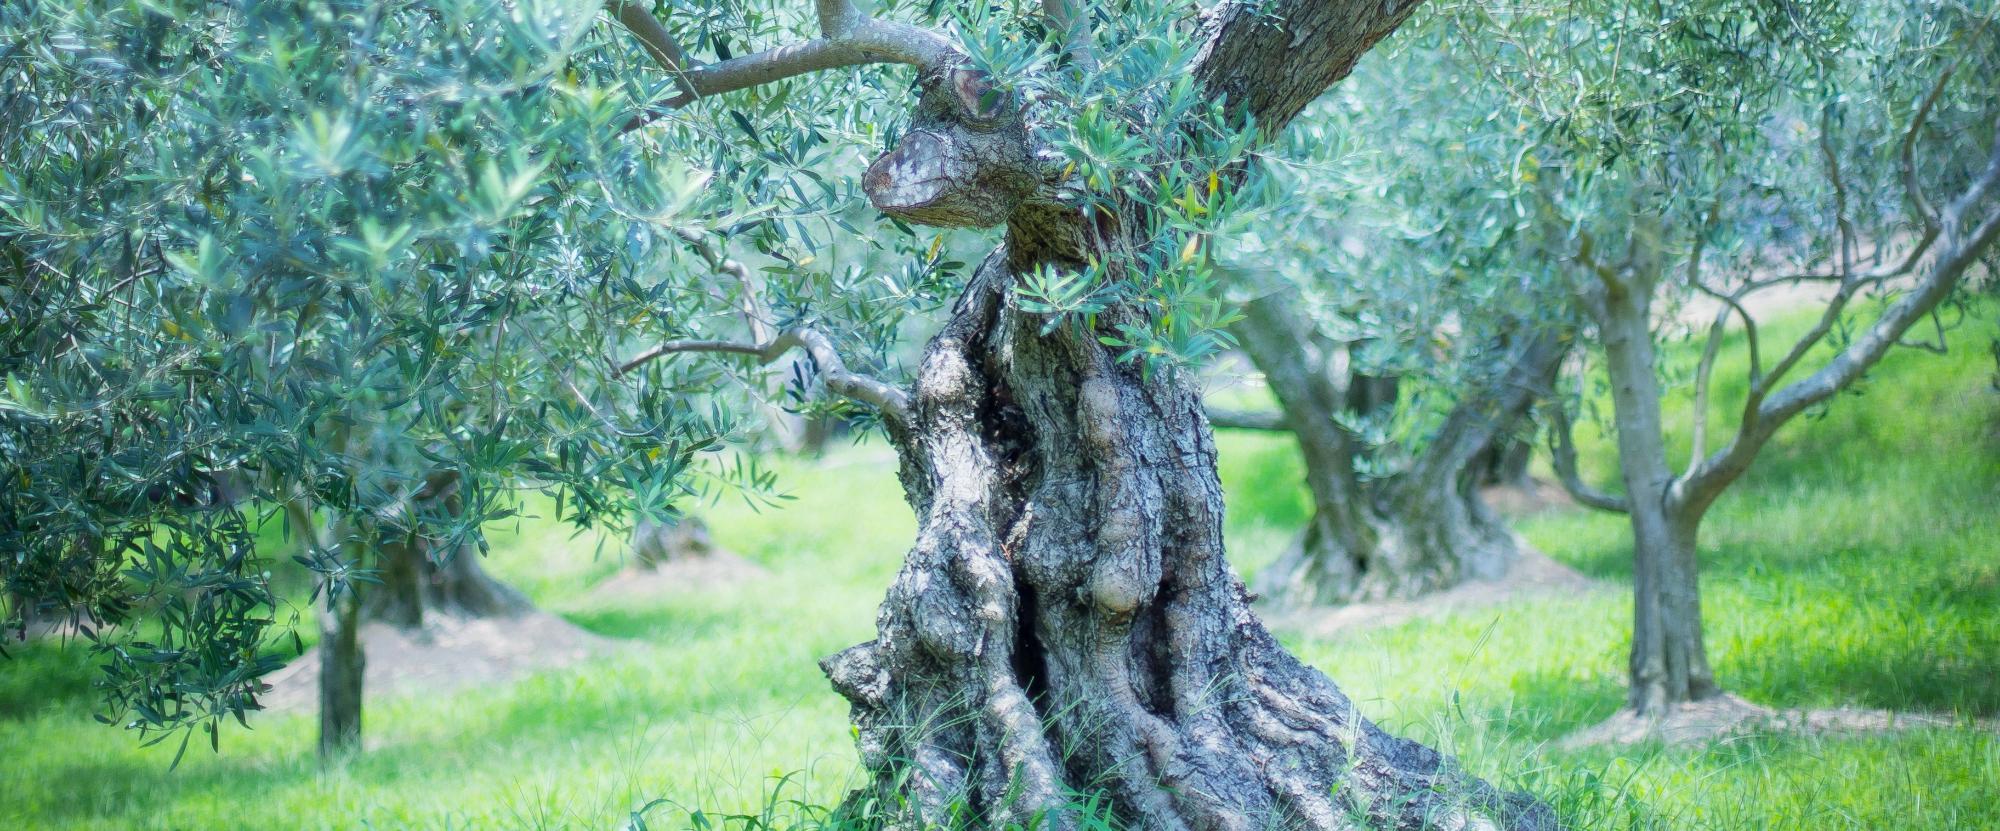 オリーブの原木の写真